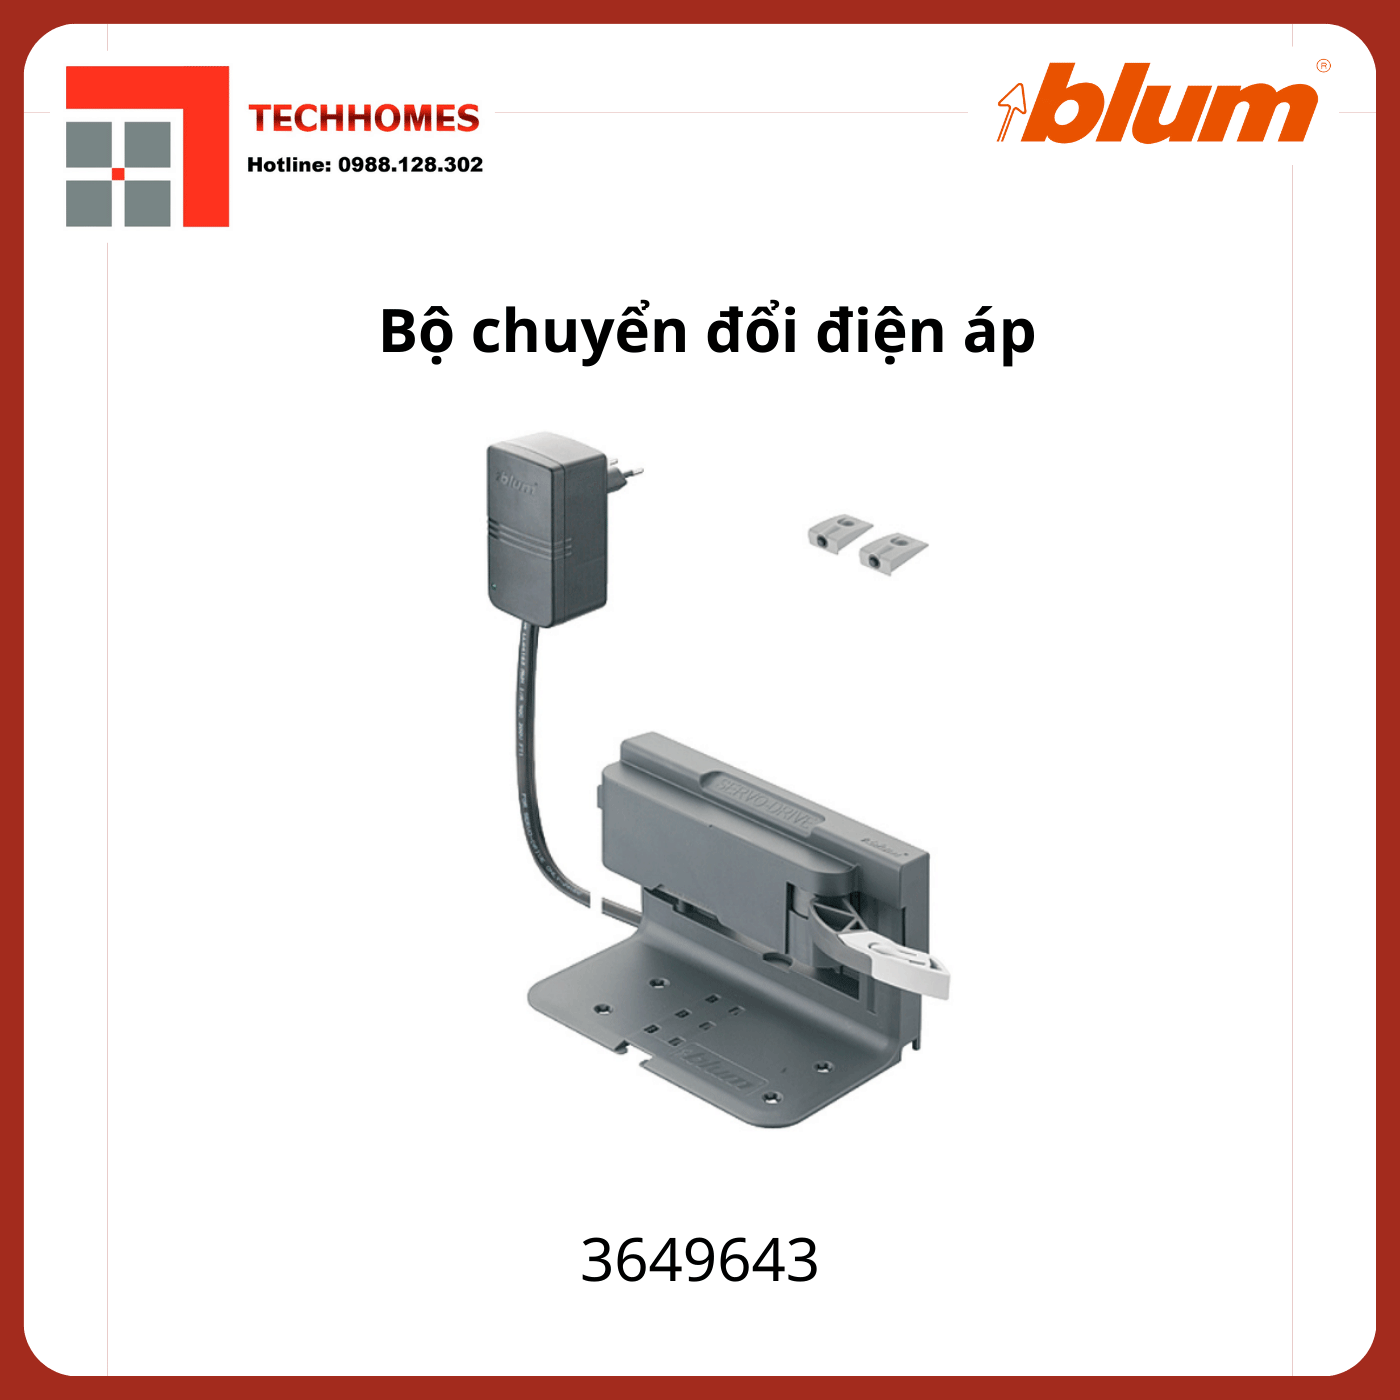 Bộ chuyển đổi điện áp Blum, 3649643